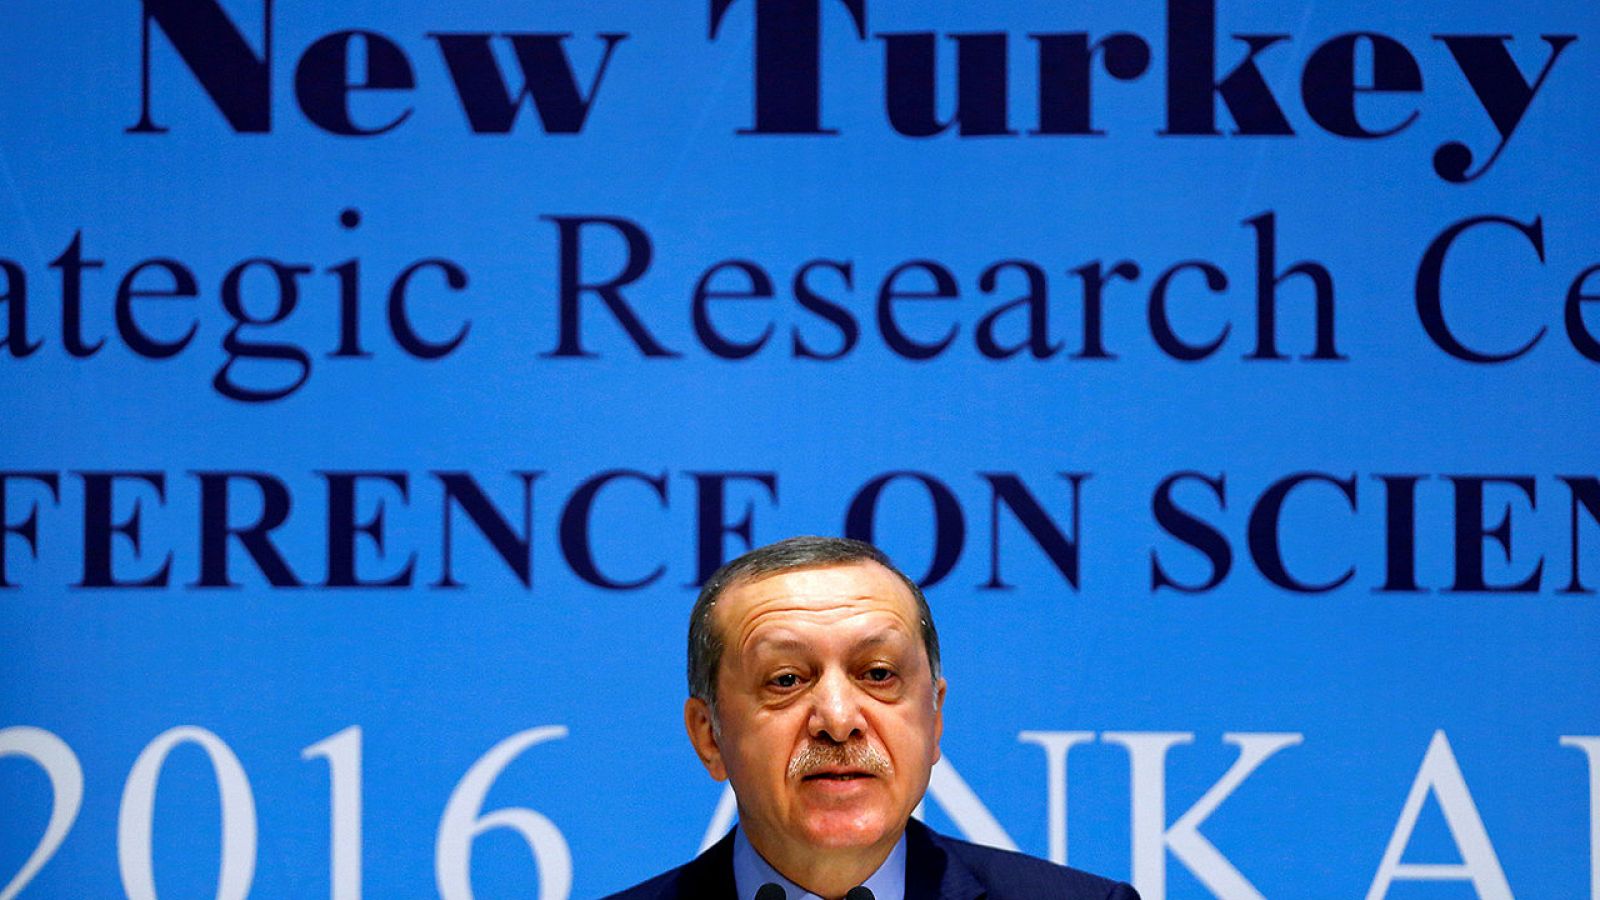 El presidente turco, Recep Tayyip Erdogan, durante un acto en Ankara, el 3 de octubre de 2016. REUTERS/Umit Bektas